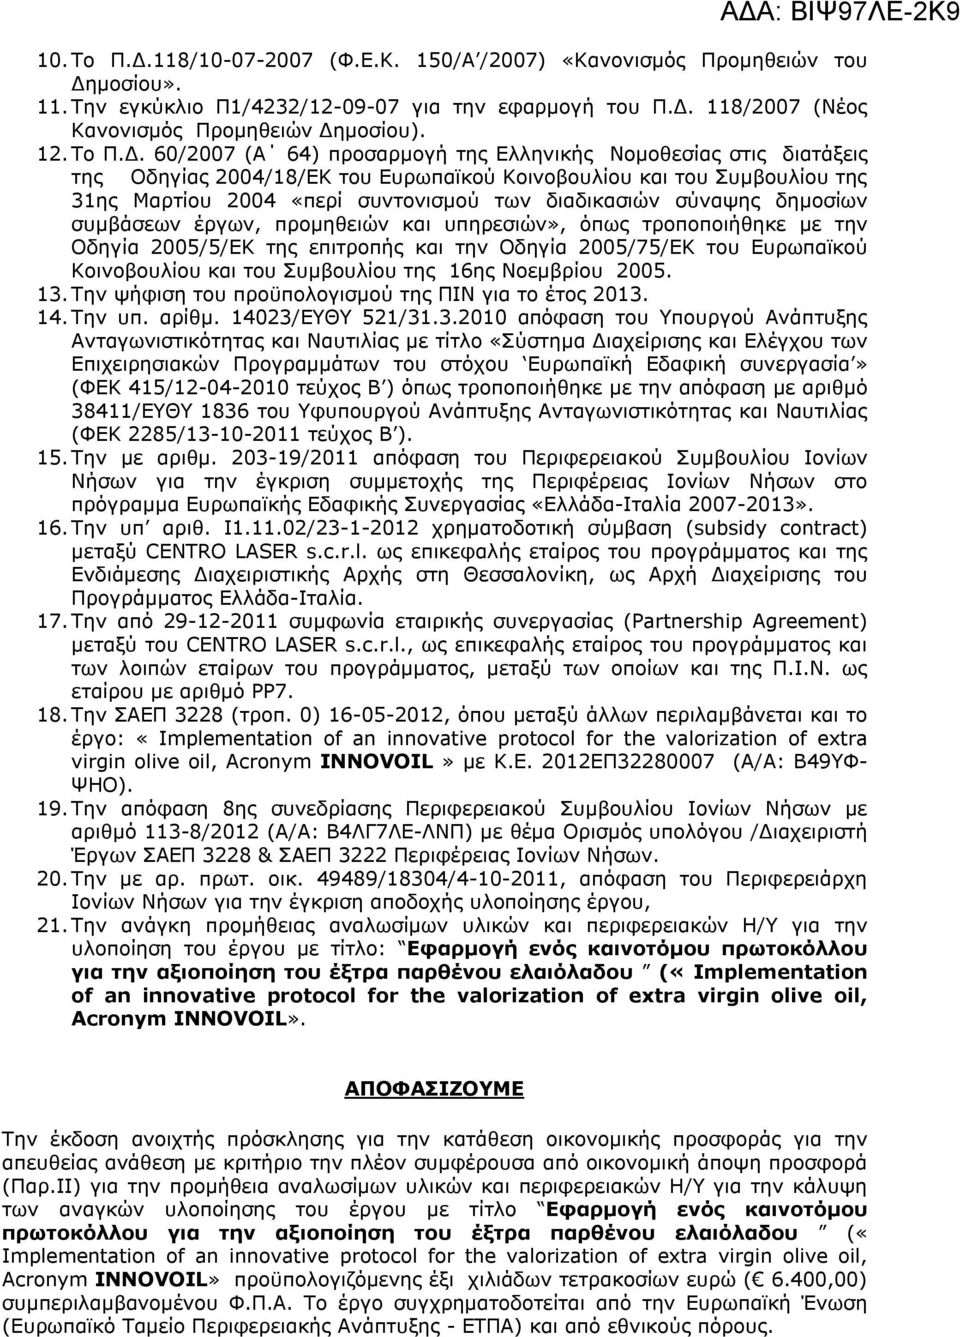 60/2007 (Α 64) προσαρμογή της Ελληνικής Νομοθεσίας στις διατάξεις της Οδηγίας 2004/18/ΕΚ του Ευρωπαϊκού Κοινοβουλίου και του Συμβουλίου της 31ης Μαρτίου 2004 «περί συντονισμού των διαδικασιών σύναψης